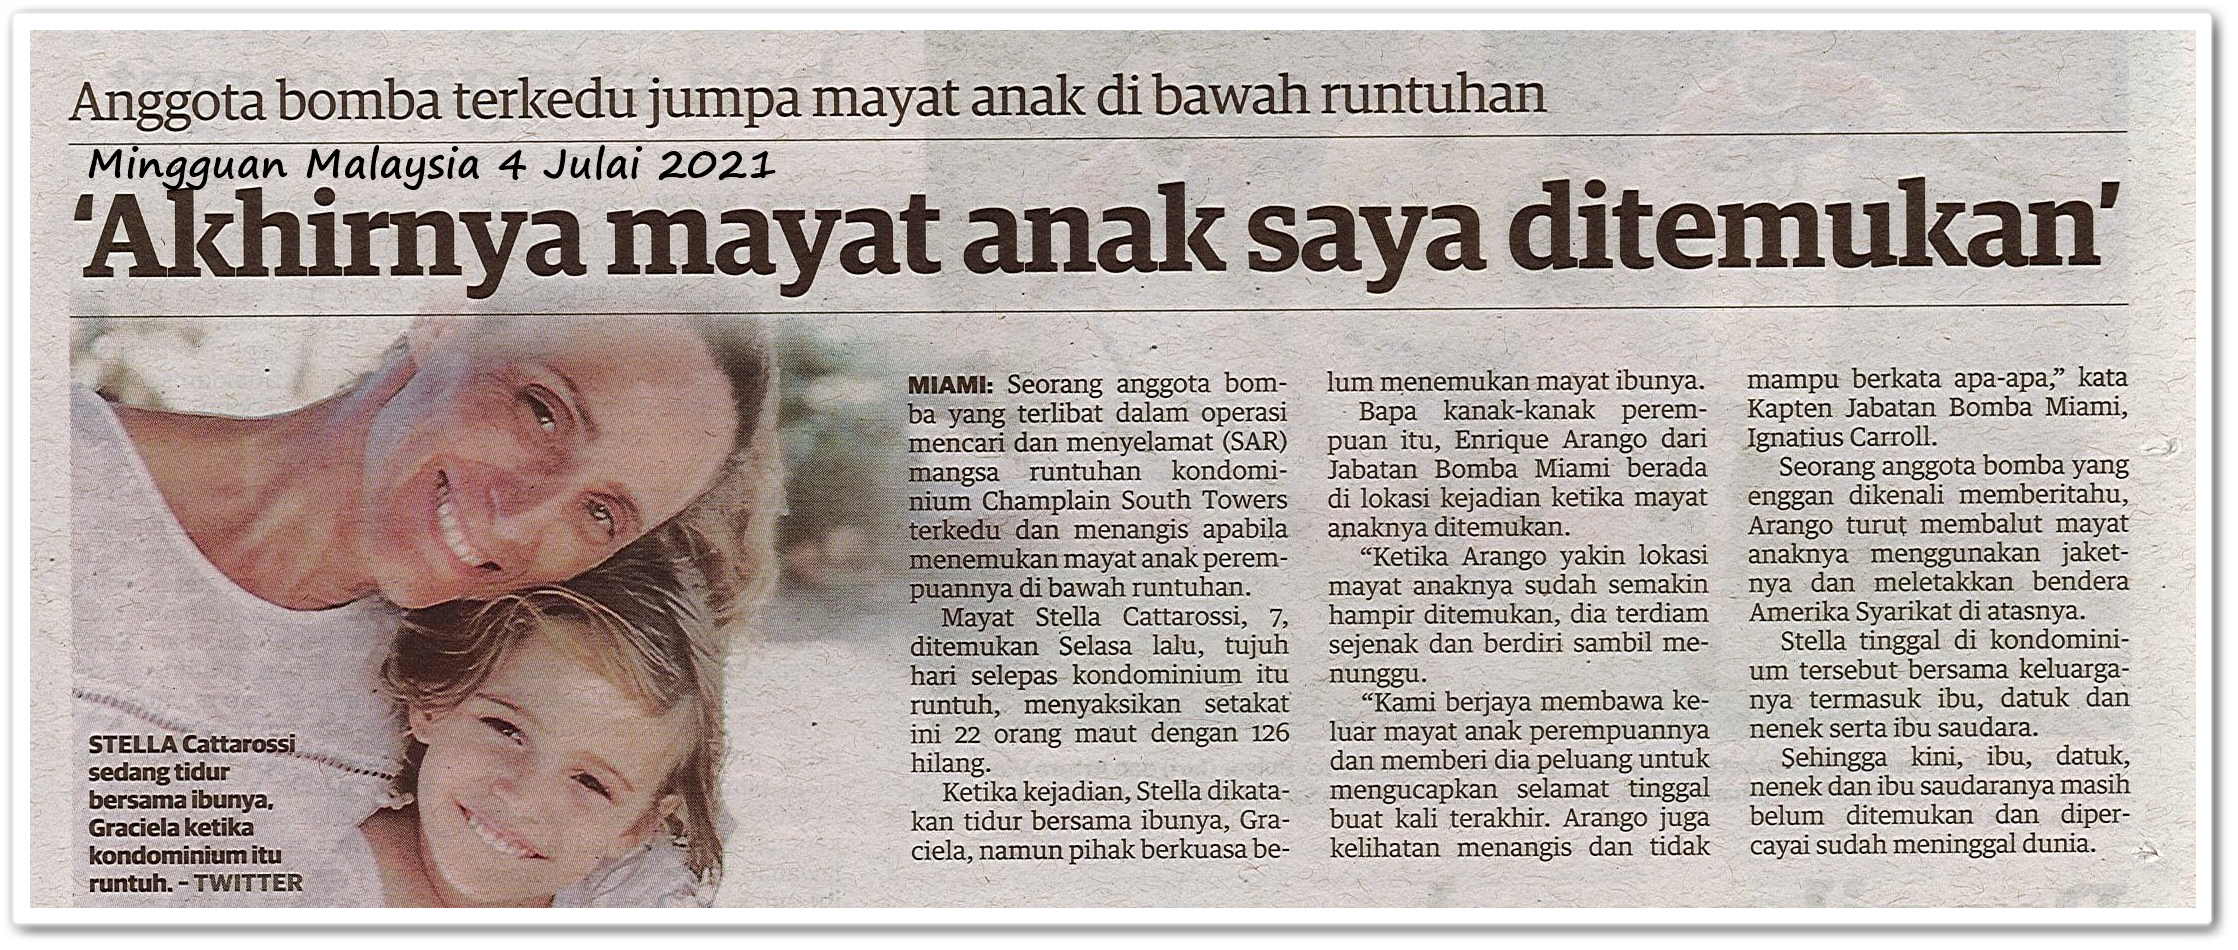 Akhirnya mayat anak saya ditemukan - Keratan akhbar Mingguan Malaysia 4 Julai 2021